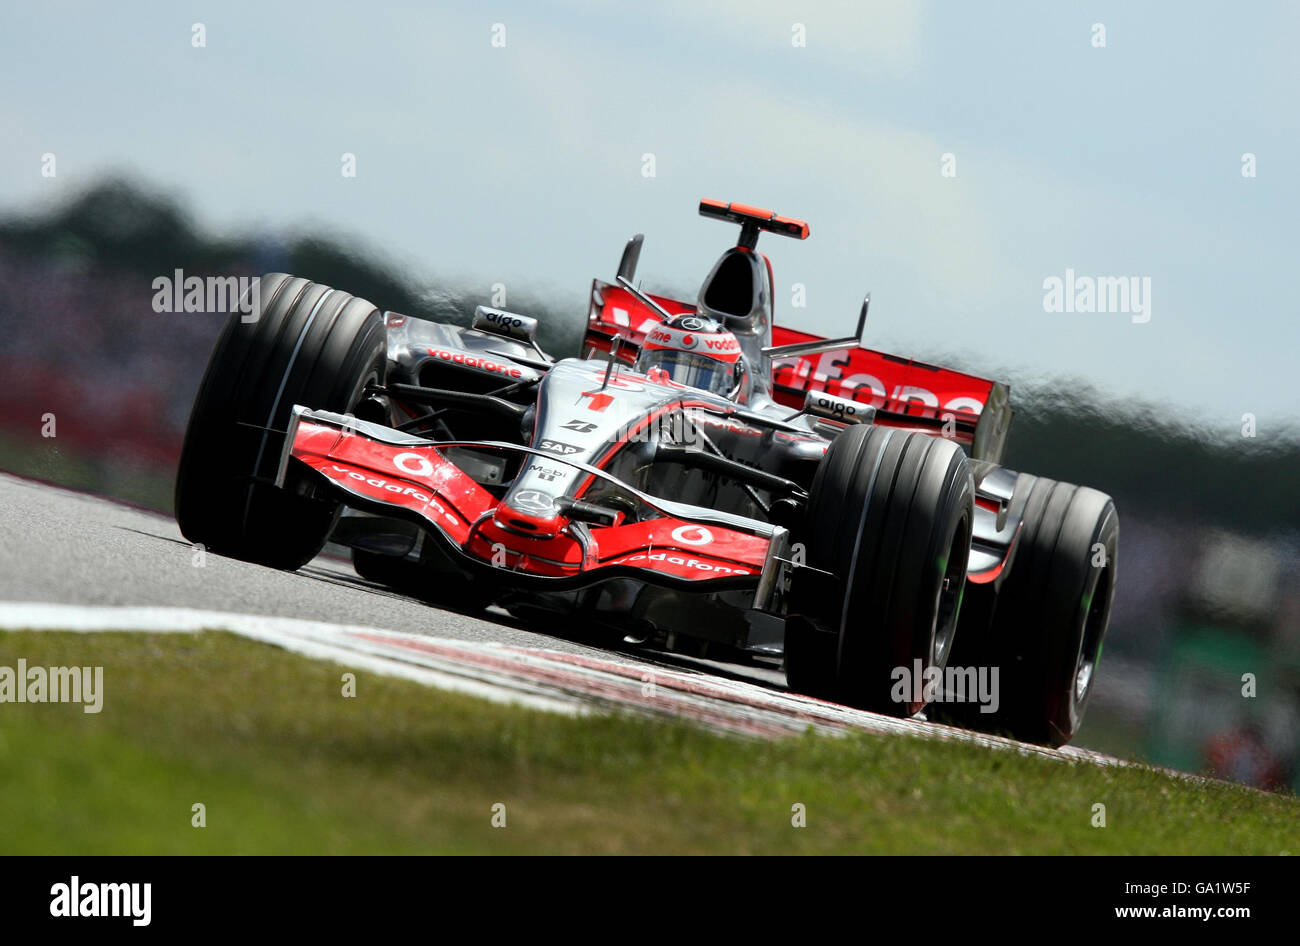 F1 vista generale gv gara di guida automobilistica a ruote scoperte  inghilterra mangpb immagini e fotografie stock ad alta risoluzione - Alamy